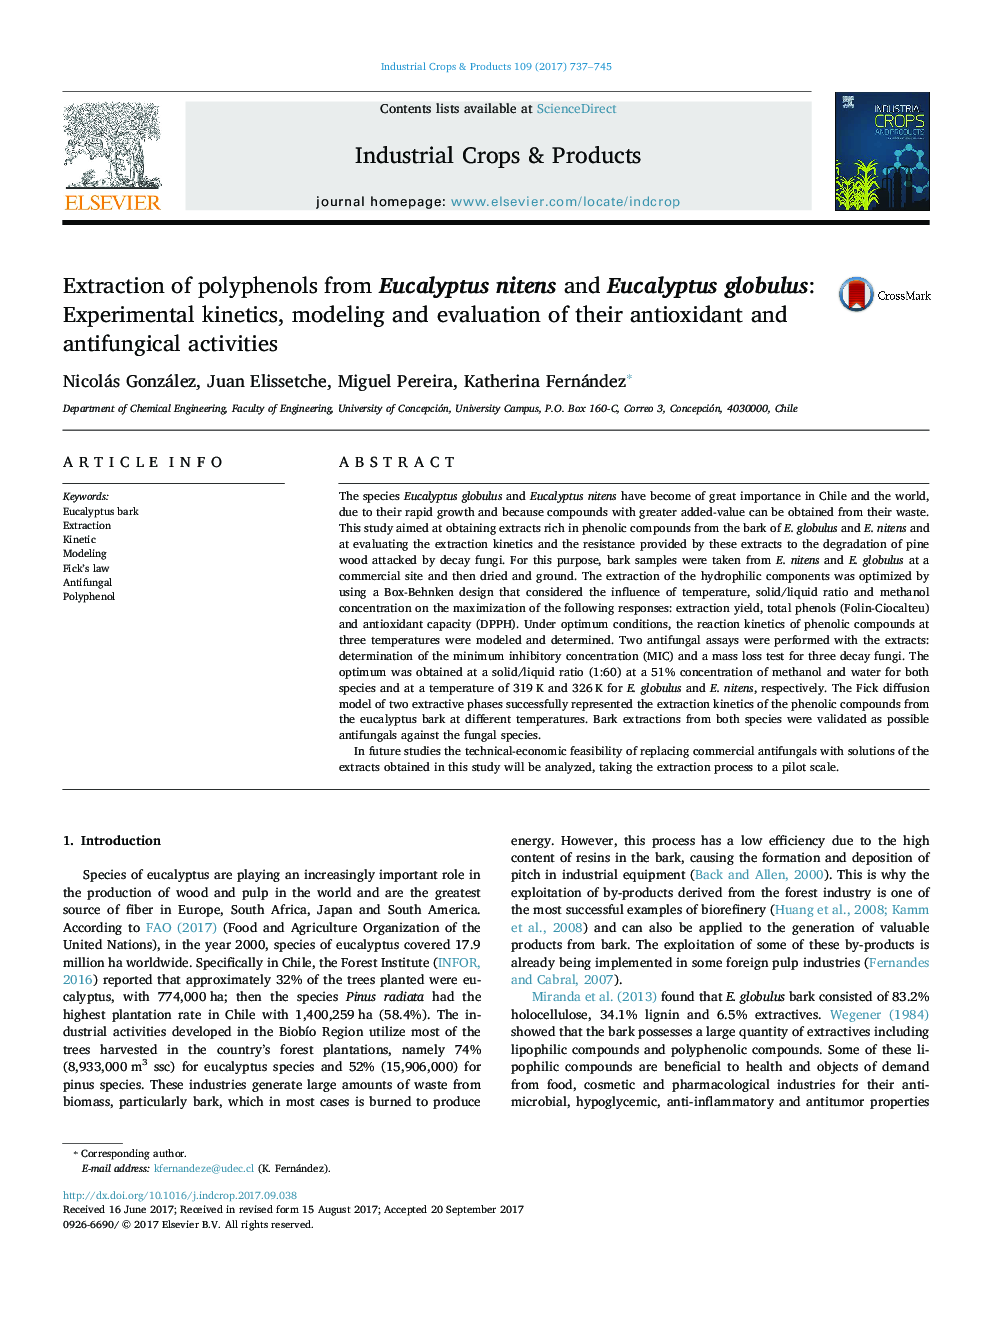 استخراج پلی فنل از اکالیپتوس نیتنز و اکالیپتوس گلوبولوس: سینتیک تجربی، مدلسازی و ارزیابی فعالیت های آنتی اکسیدانی و ضد قارچی 